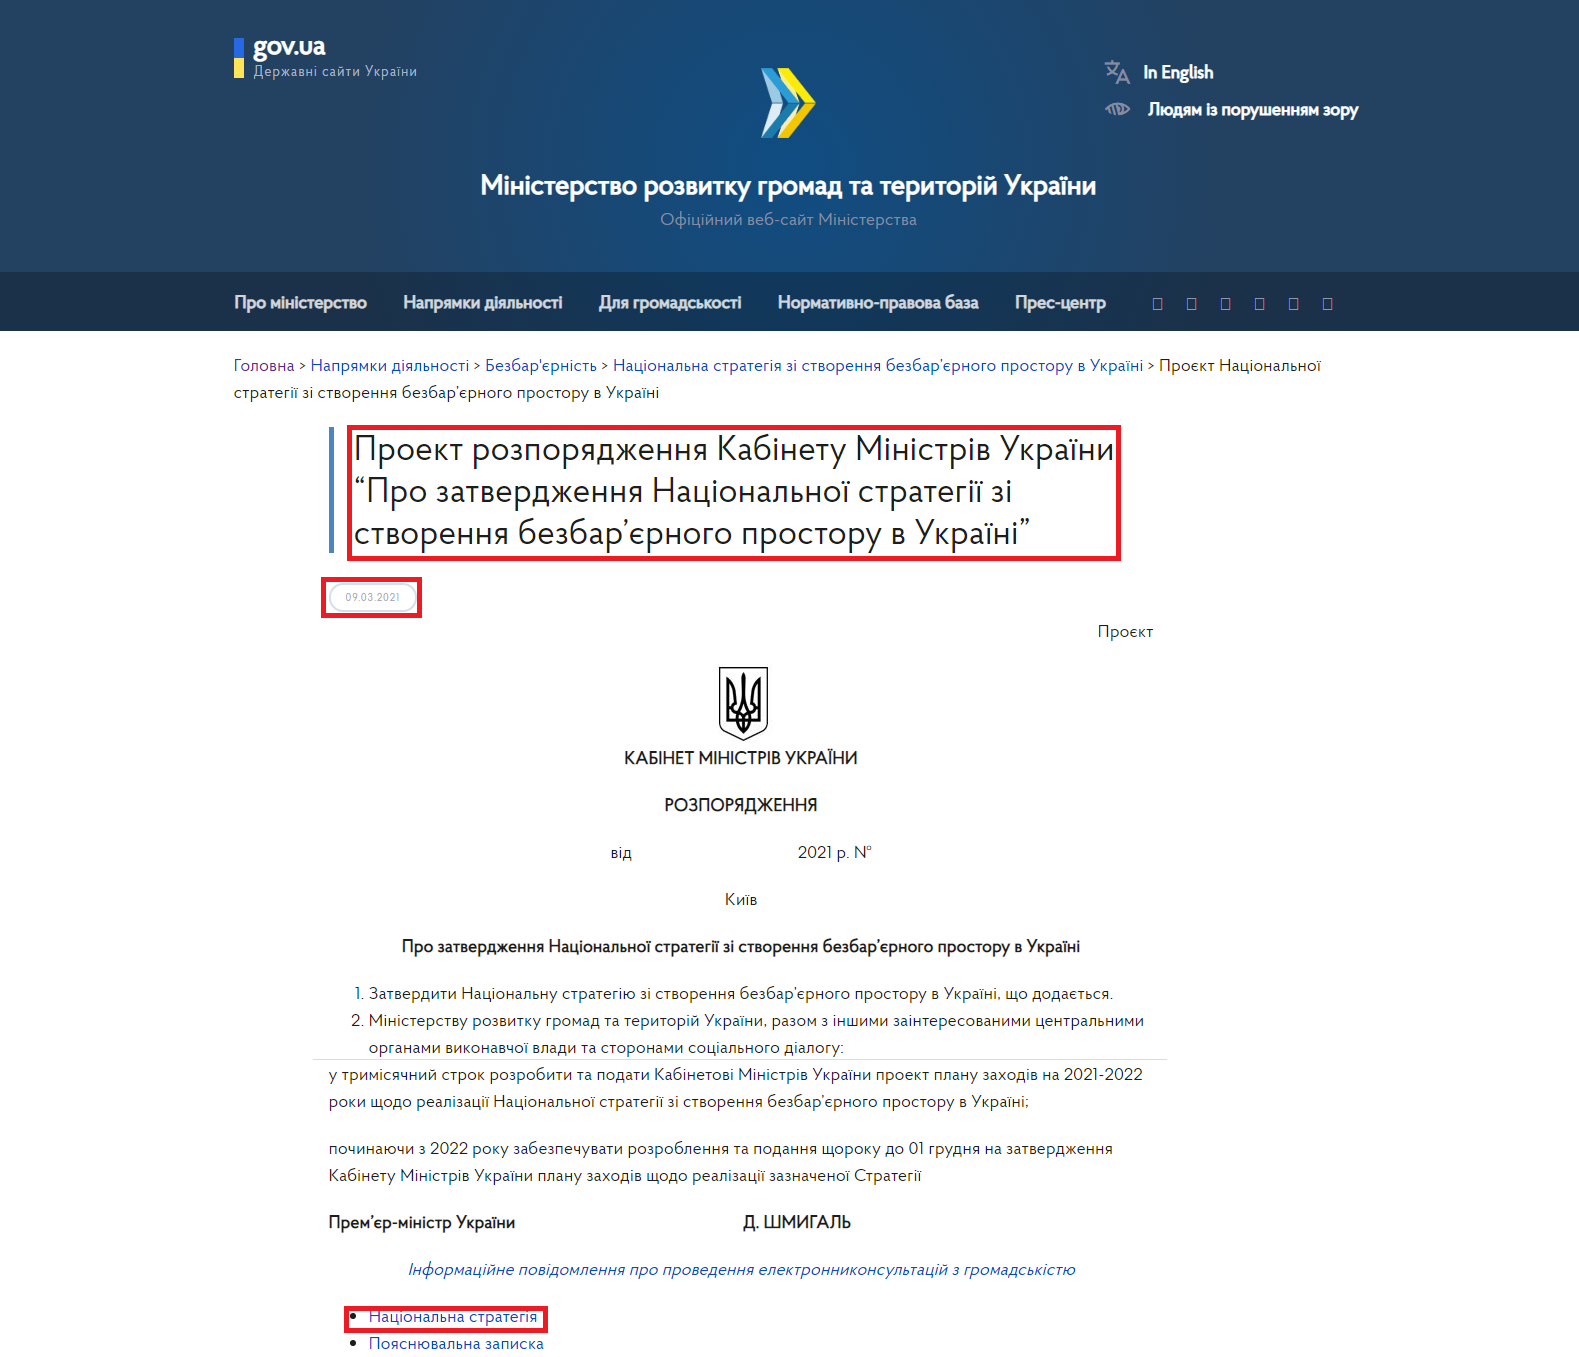 https://www.minregion.gov.ua/base-law/grom-convers/elektronni-konsultatsiyi-z-gromadskistyu/proekt-rozporyadzhennya-kabinetu-ministriv-ukrayiny-pro-zatverdzhennya-naczionalnoyi-strategiyi-zi-stvorennya-bezbaryernogo-prostoru-v-ukrayini/